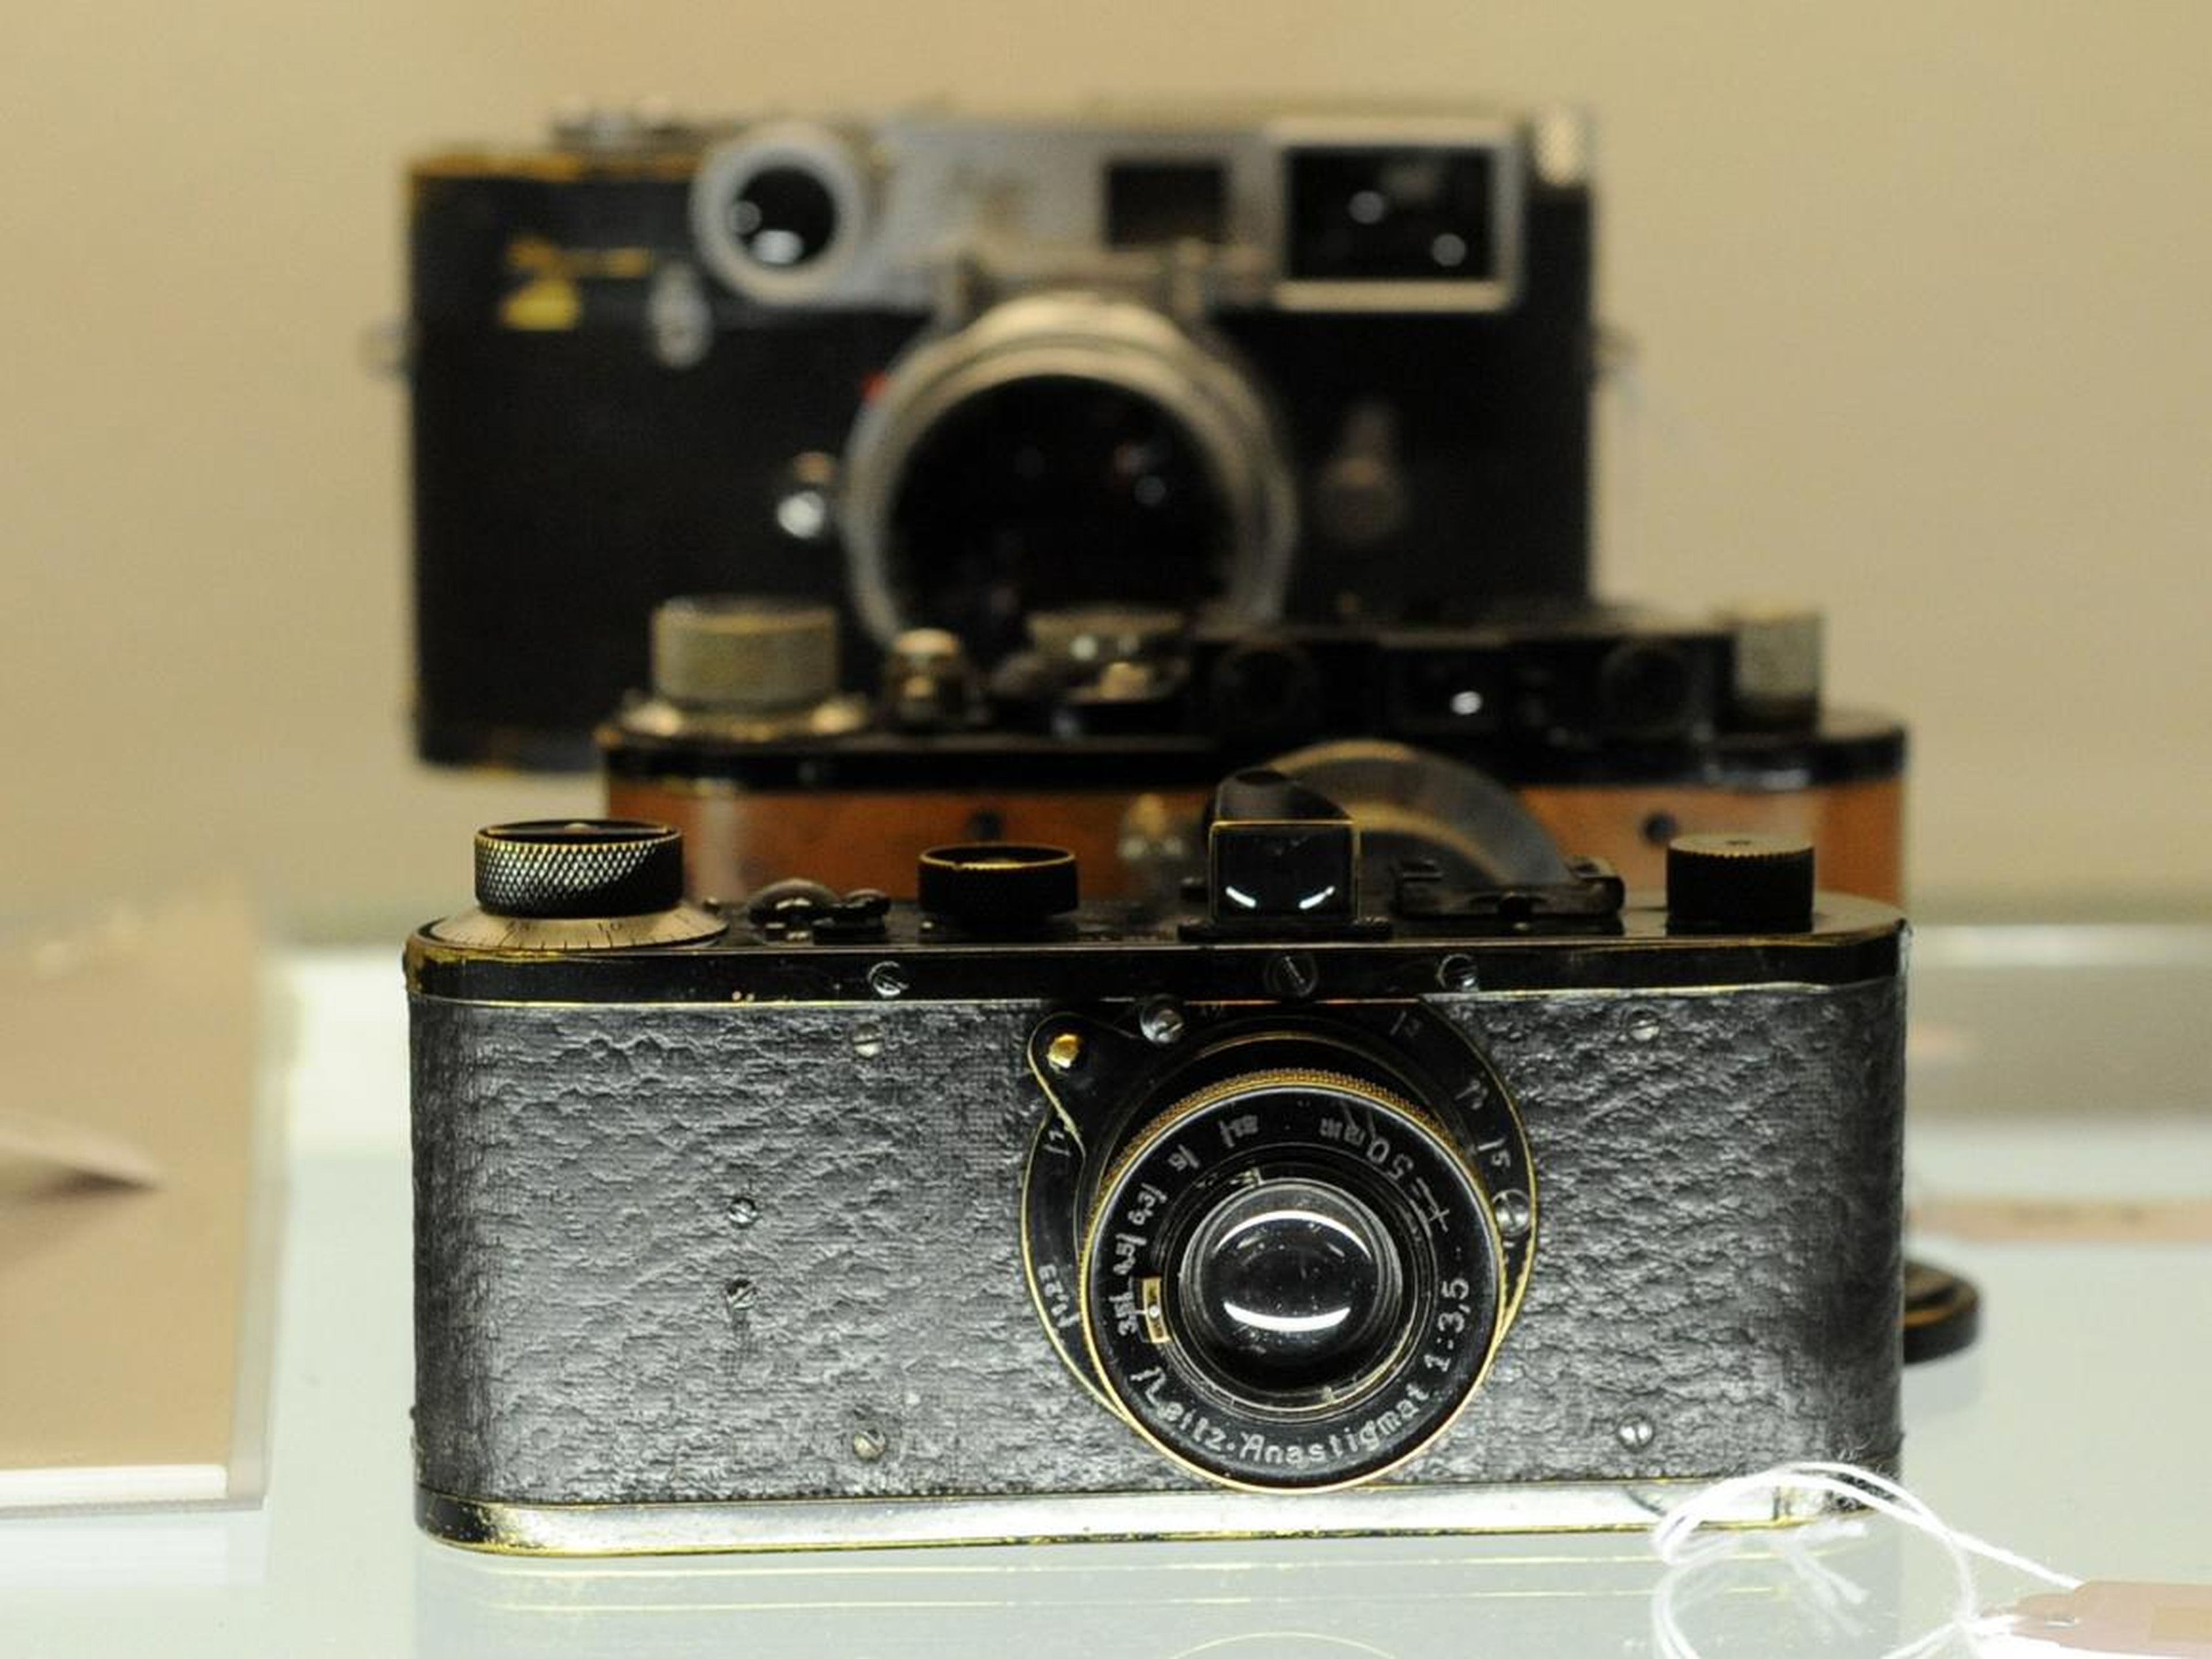 El raro modelo de cámara Leica.